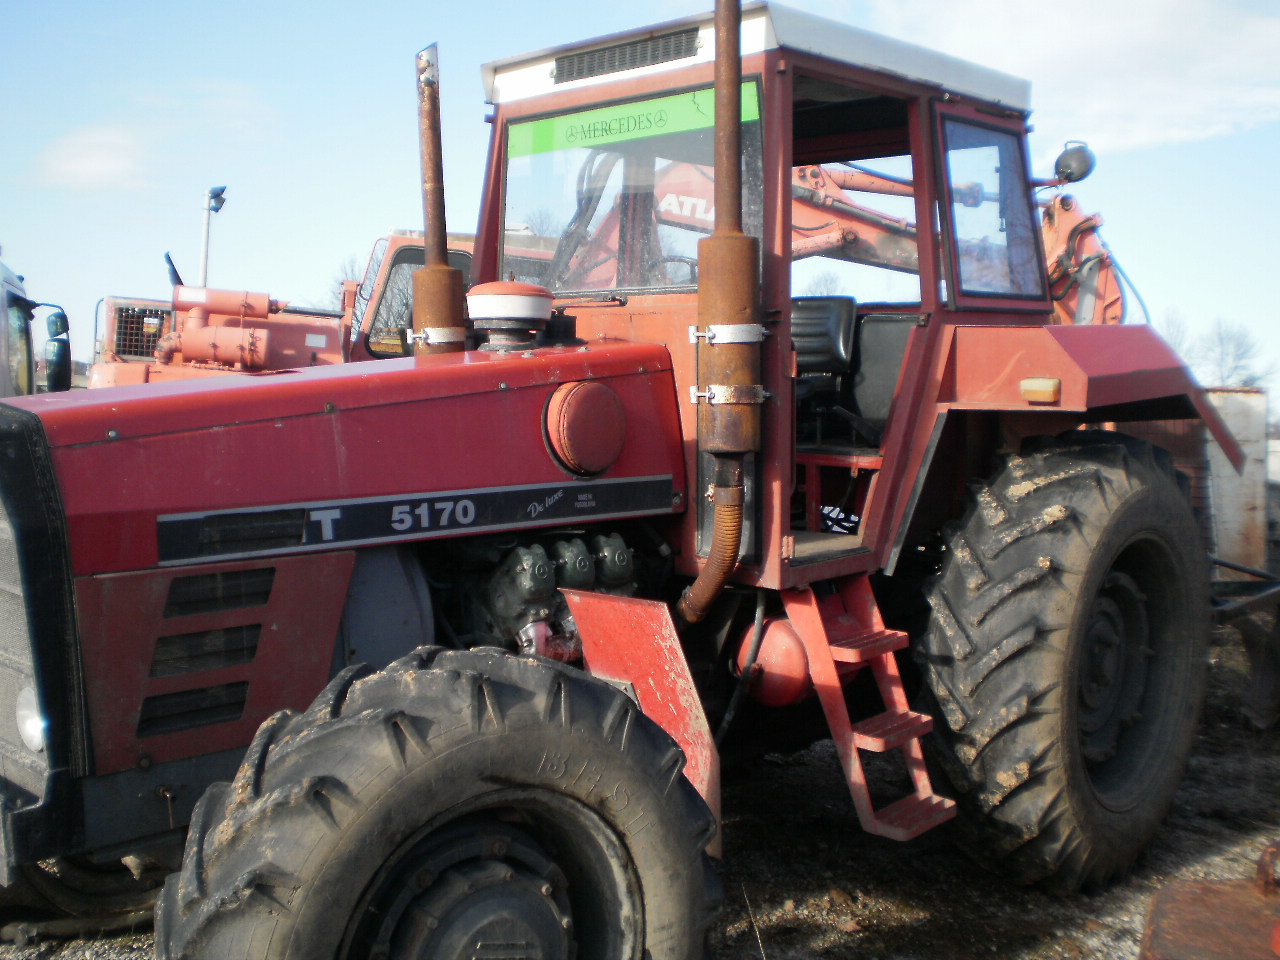 FORUMI - OGLASI prodajem ili menjam traktor imt 5170 1989 godiste sa ...